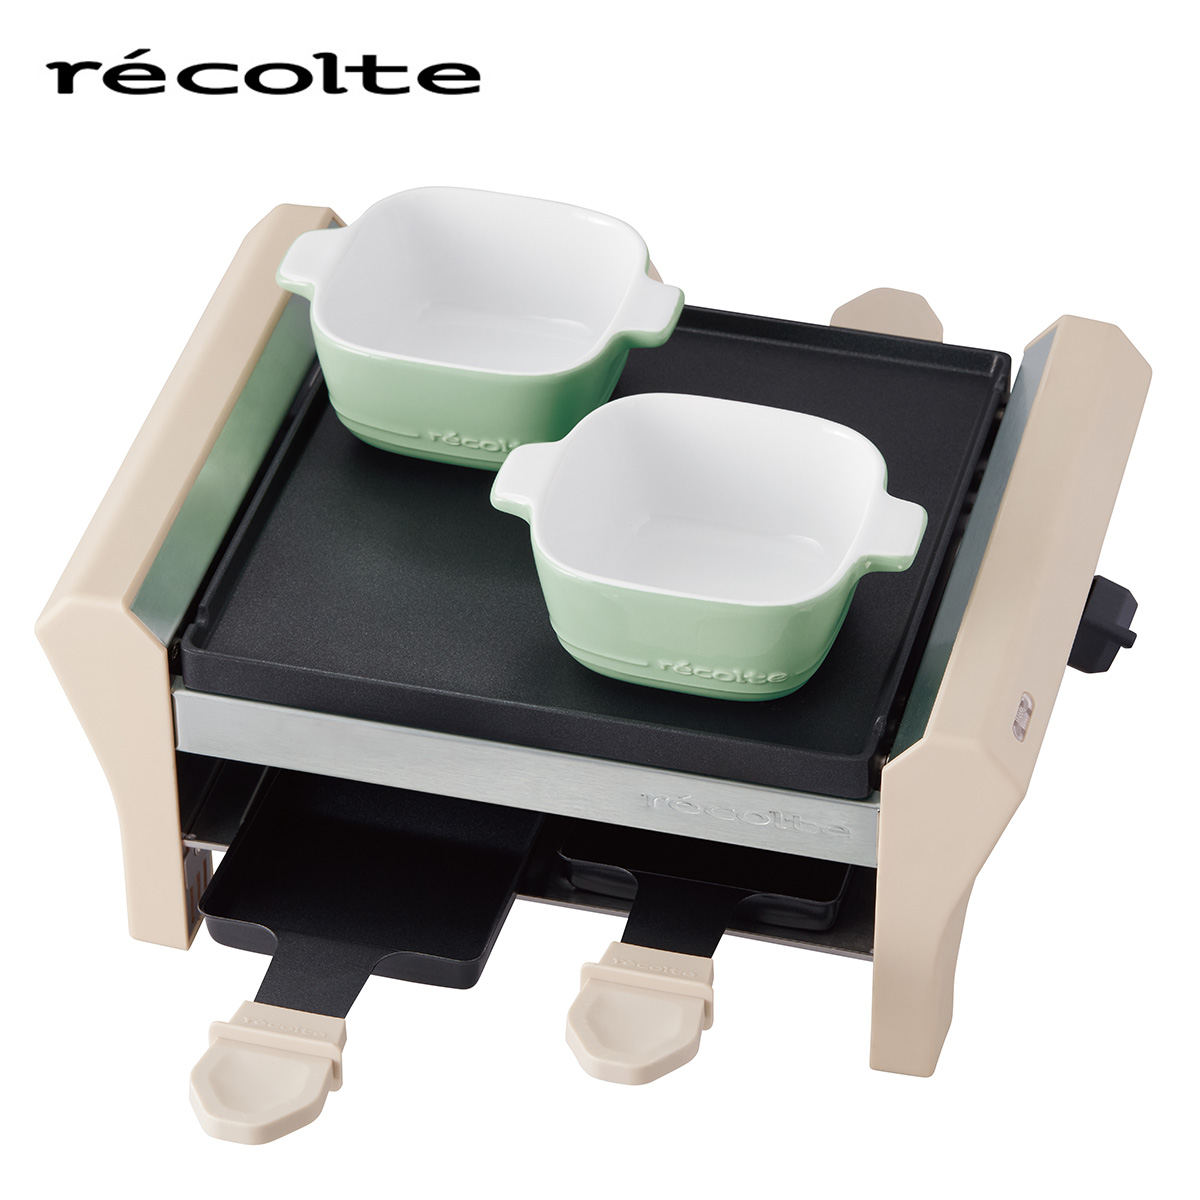 recolte(レコルト) ラクレット＆フォンデュメーカー グランメルト クリームホワイト RRF-2-W